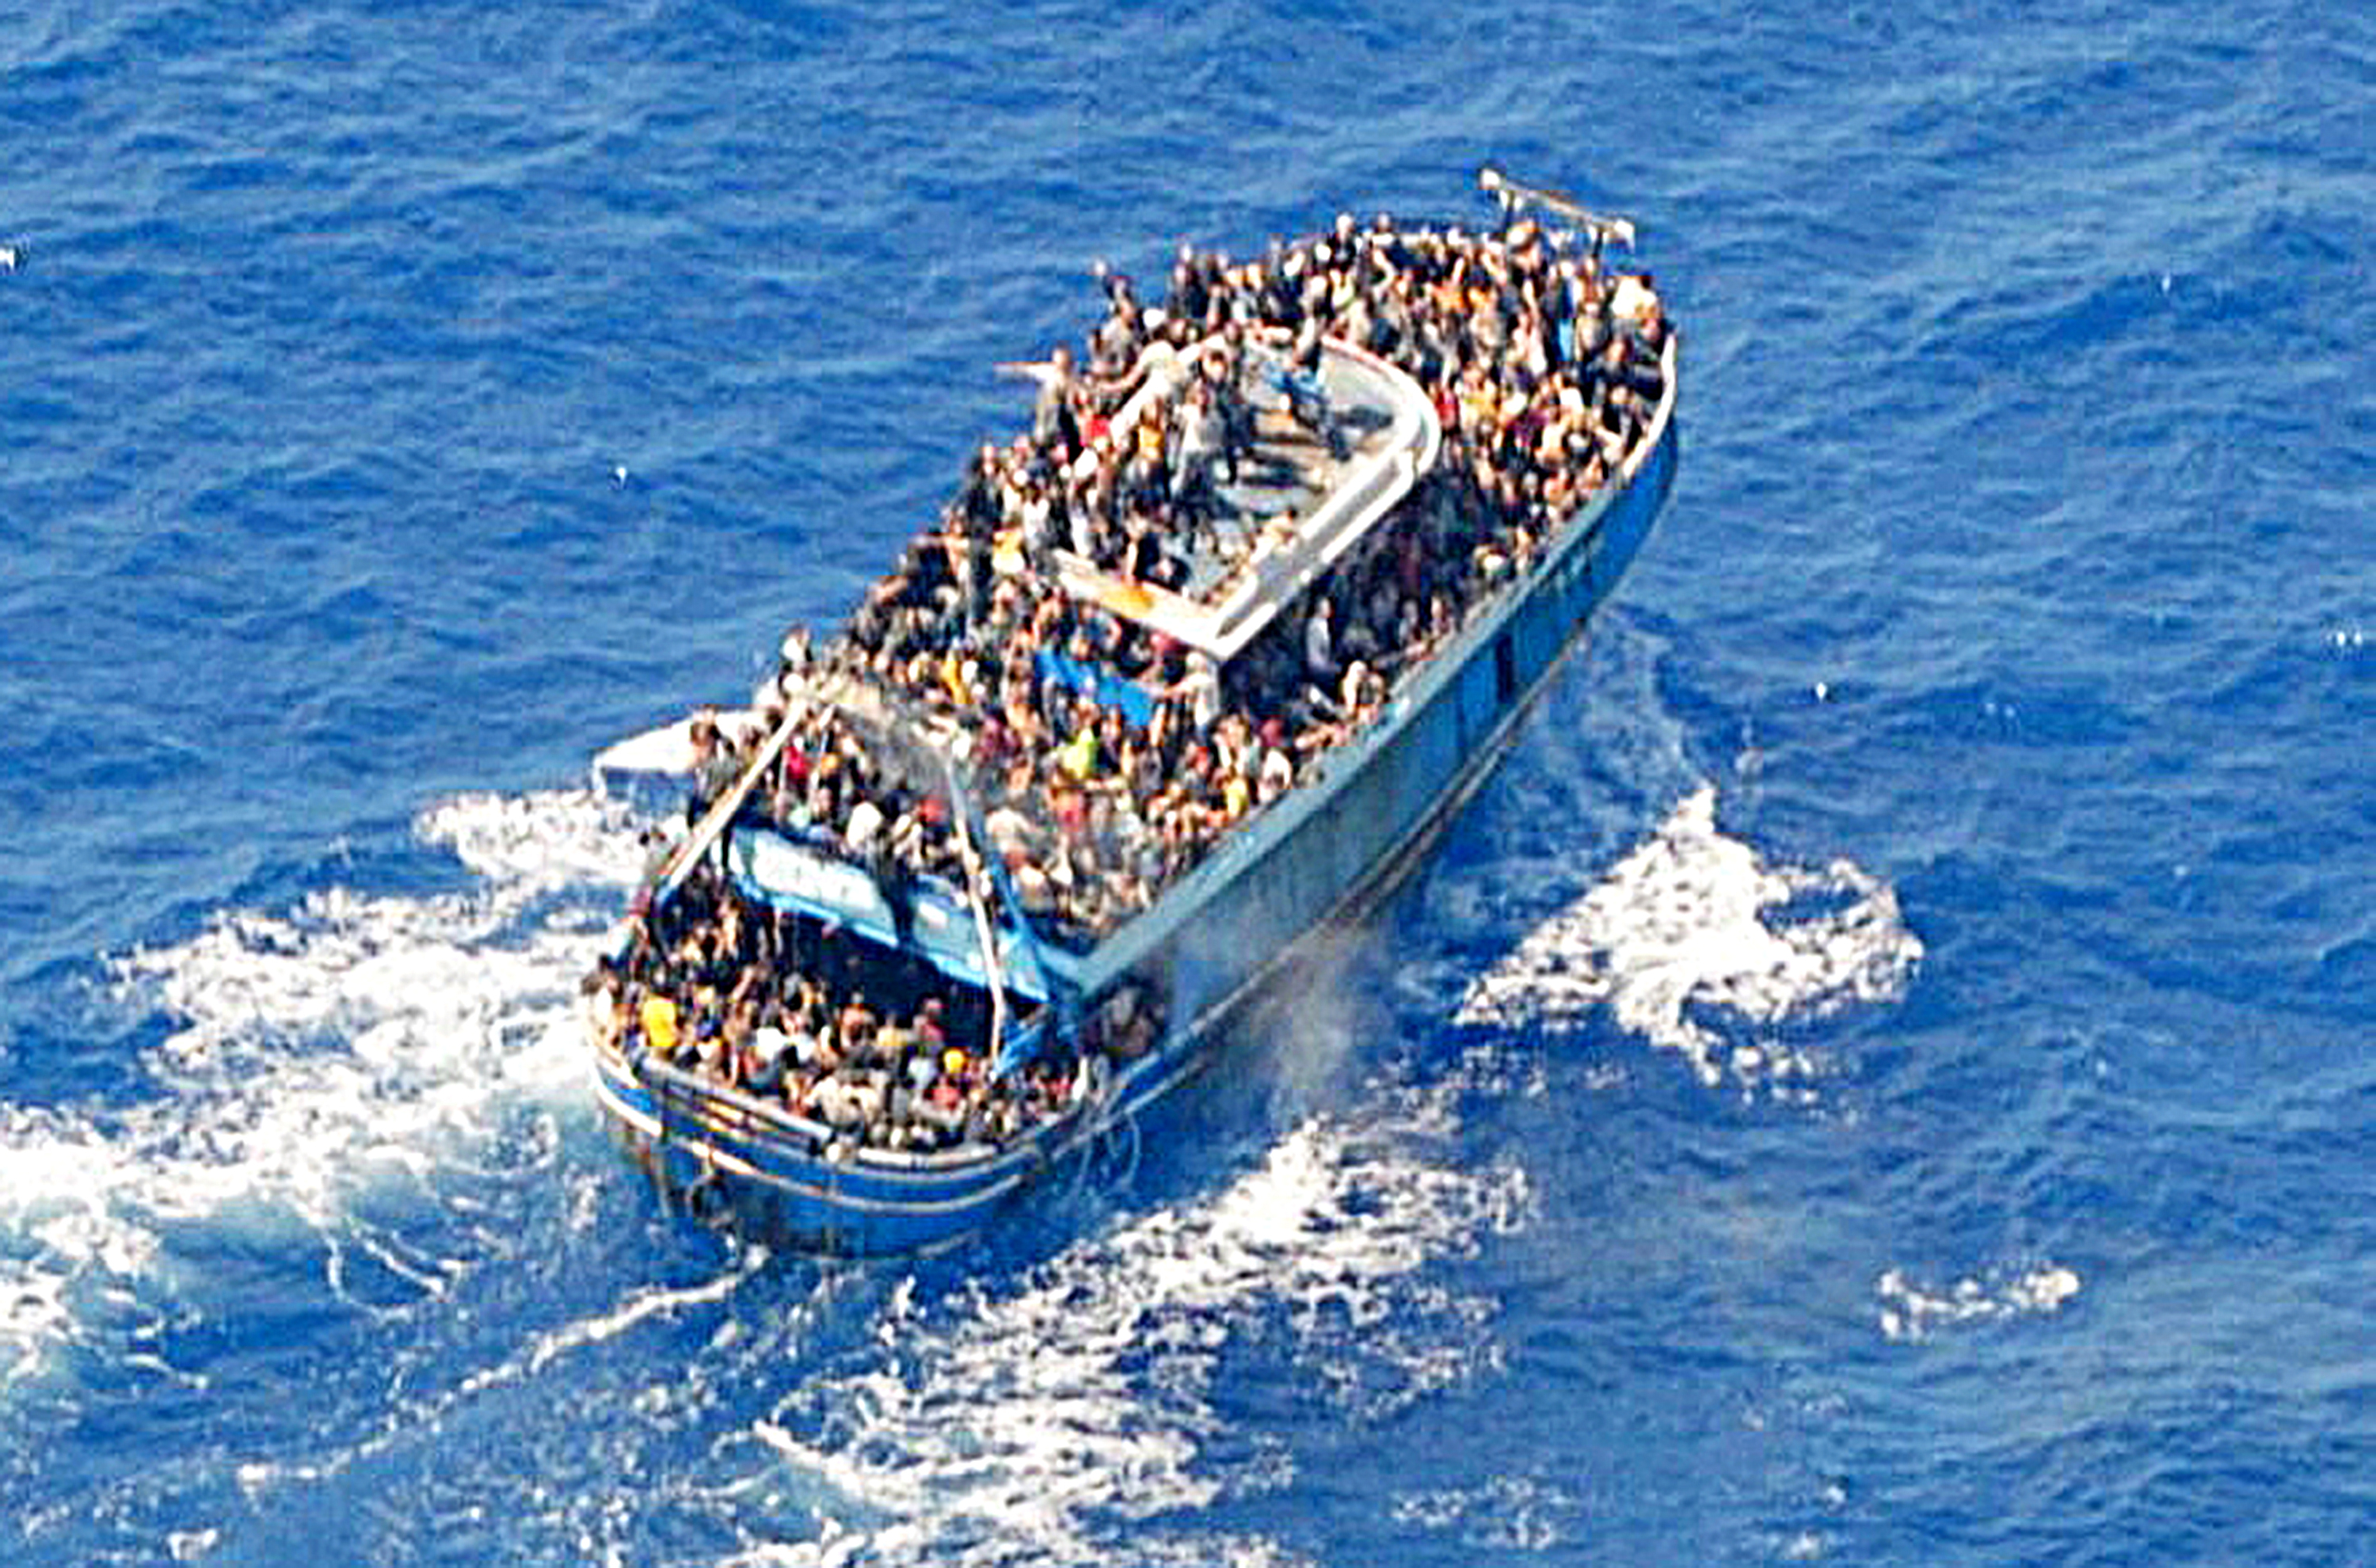 그리스 해안경비대가 14일(현지시간) 난민 수백명이 탄 낡은 어선이 펠레폰네소스 해안에서 75㎞ 떨어진 지점에서 전복돼 최소 78명이 숨지고 수백명이 실종되기 전 포착된 모습을 공개했다. 리비아 동부 항구 도시 토르브루크에서 출항해 이탈리아로 향하던 배 갑판 위에는 난민 수백명이 발 디딜 틈 없이 빼곡하게 서 있다. 로이터 연합뉴스